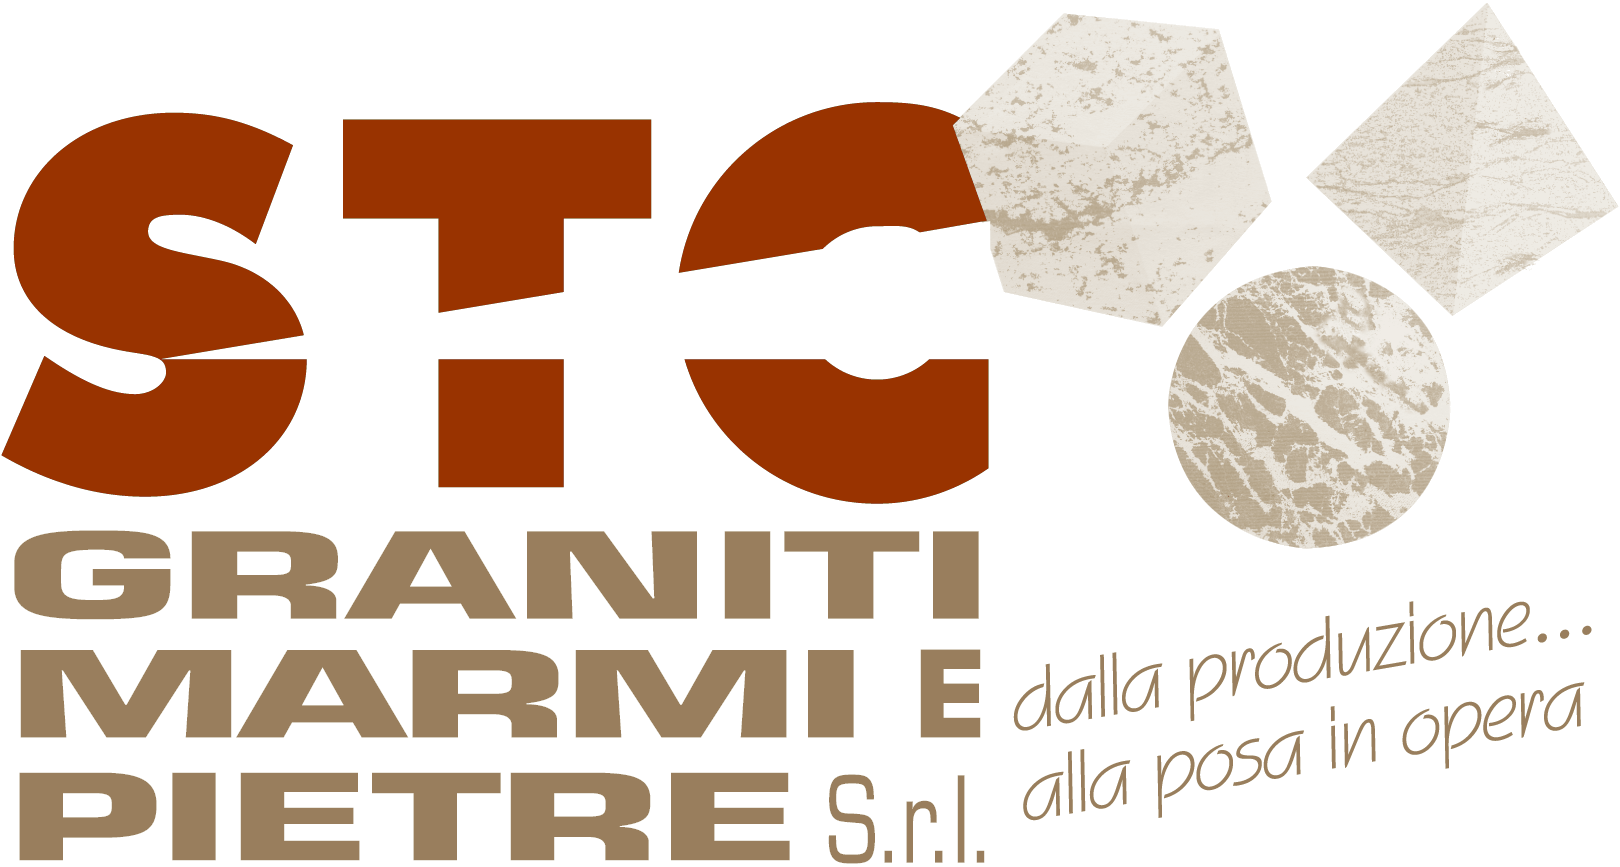 STC Graniti Marmi e Pietre S.r.l.